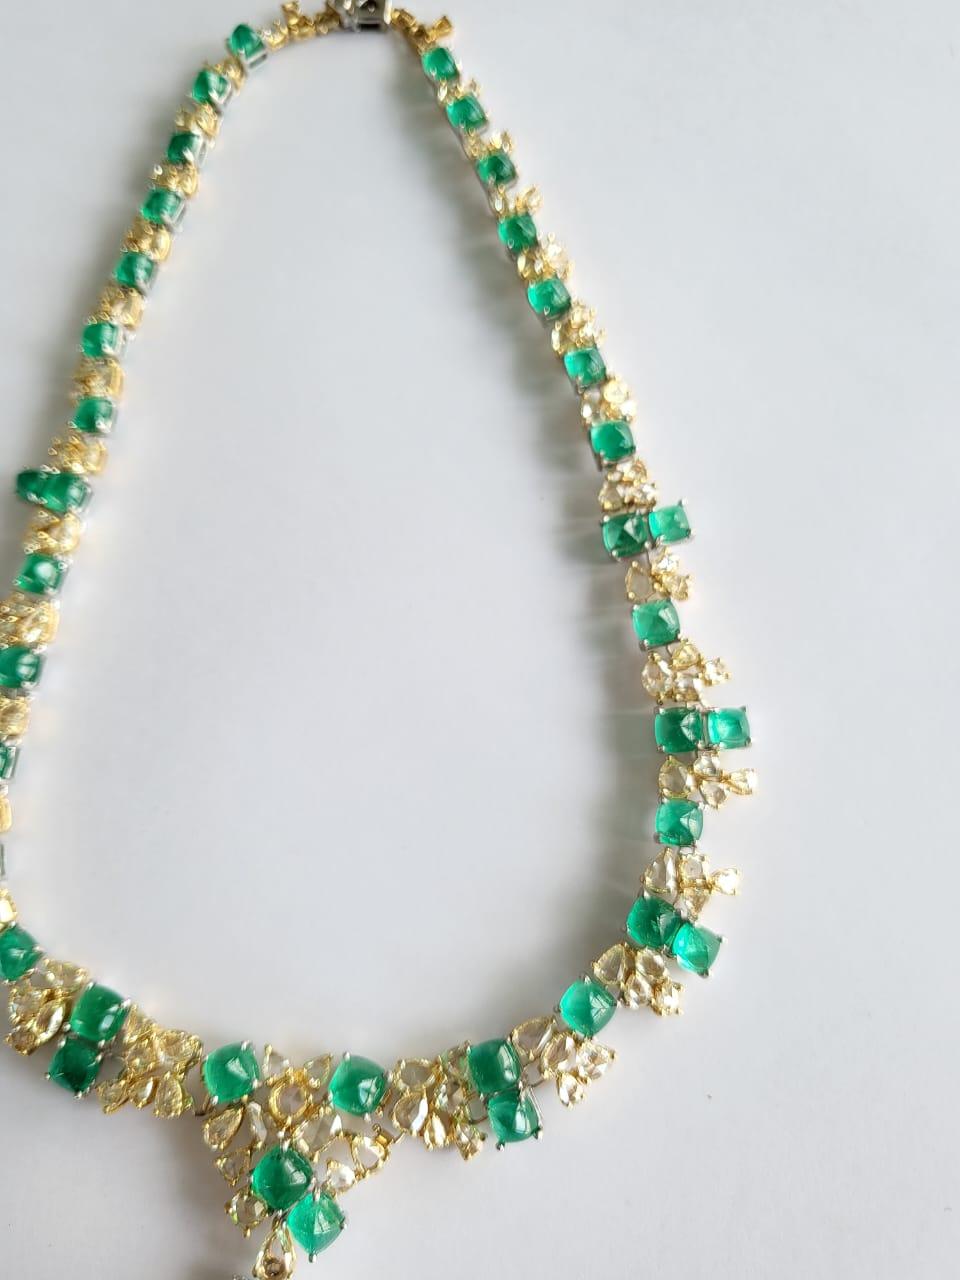 Sugarloaf Cabochon 73.04 Carats Columbian Emerald Sugarloafs & Yellow Diamonds Choker Drop Necklace